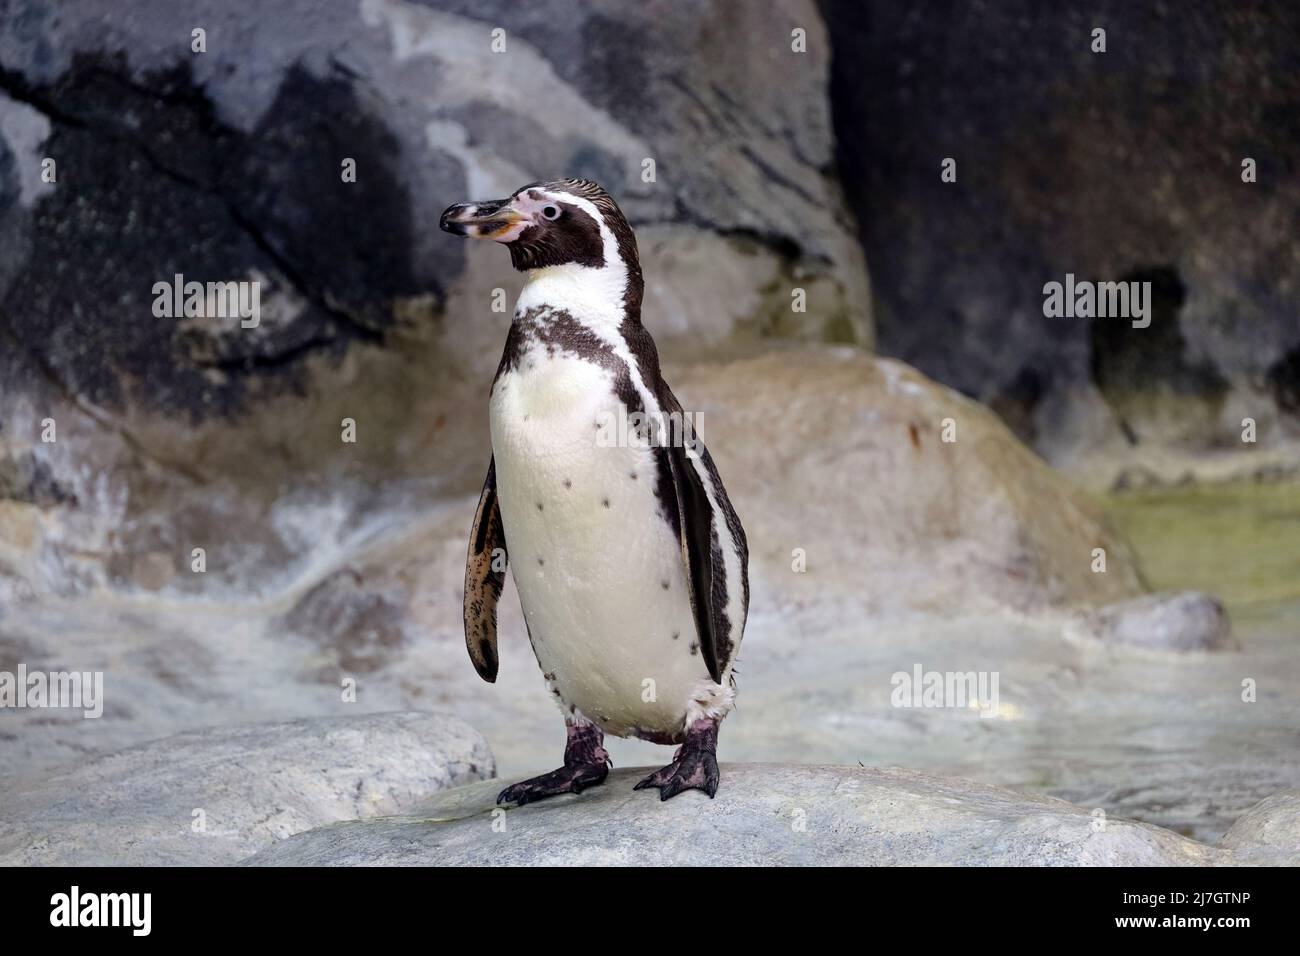 Le pingouin Humboldt se dresse sur une côte rocheuse. Pingouin sud-américain reposant après la baignade Banque D'Images